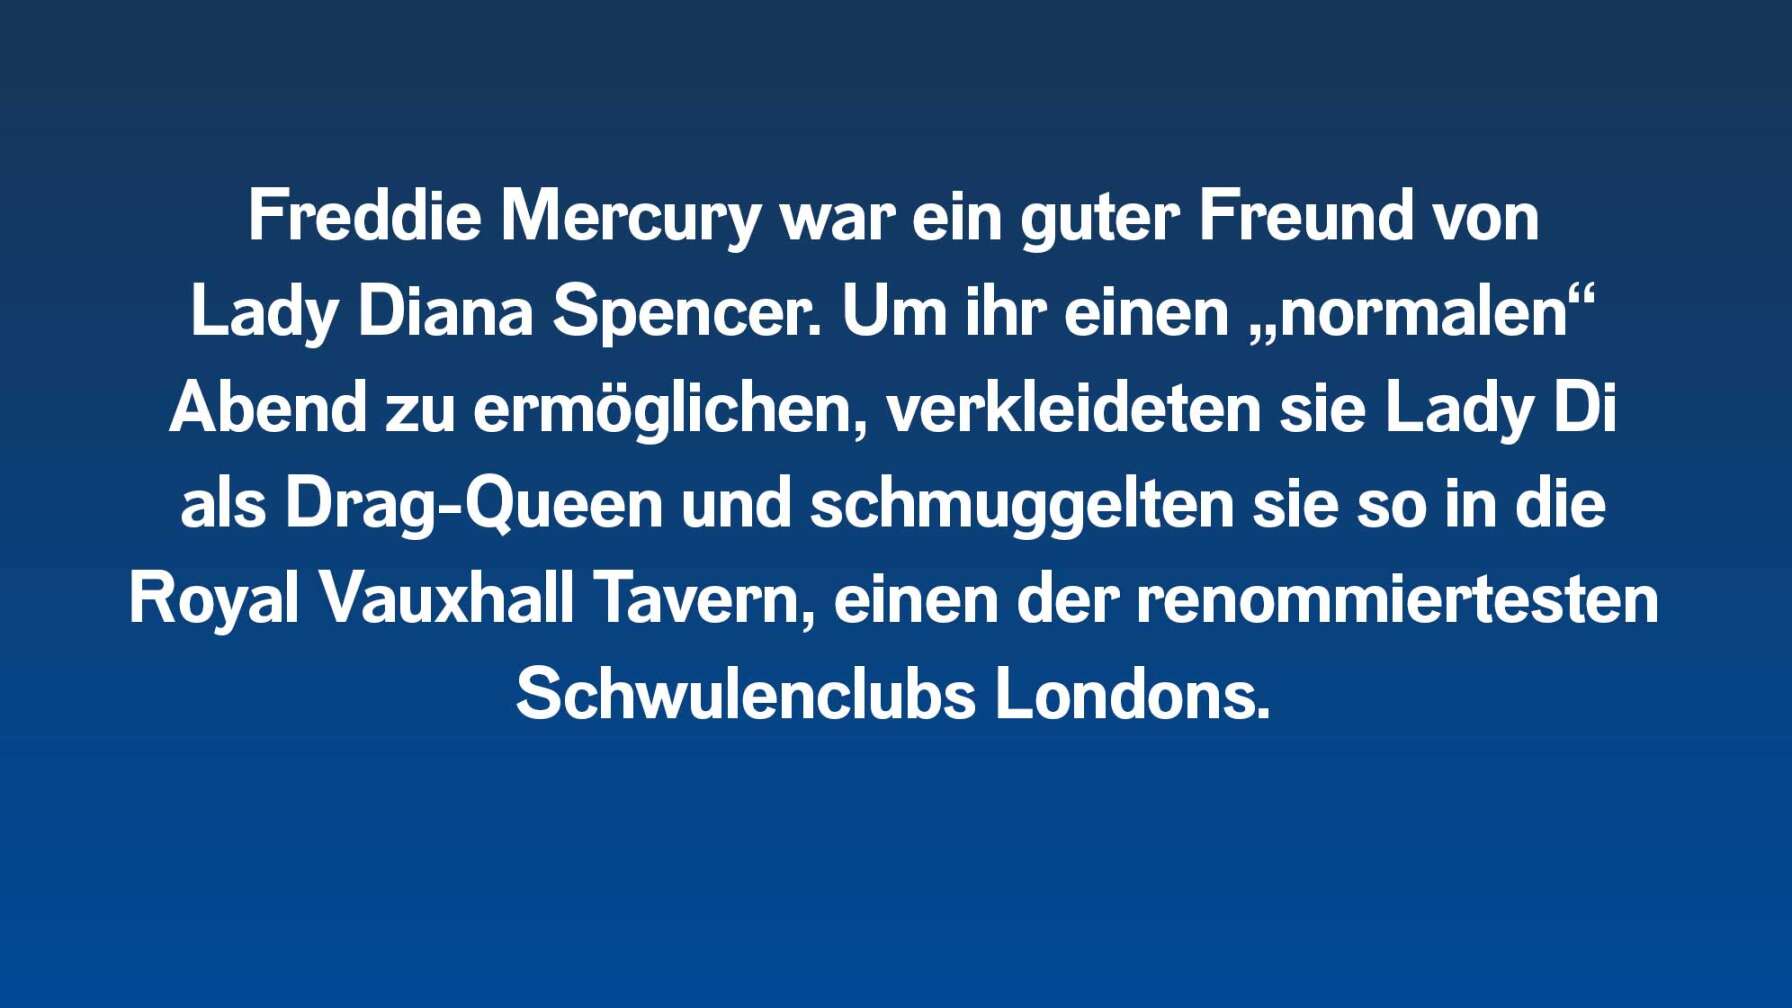 Freddie Mercury war ein guter Freund von Lady Diana Spencer. Um ihr einen „normalen“ Abend zu ermöglichen, verkleideten sie Lady Di als Drag-Queen und schmuggelten sie so in die Royal Vauxhall Tavern, einen der renommiertesten Schwulenclubs Londons.